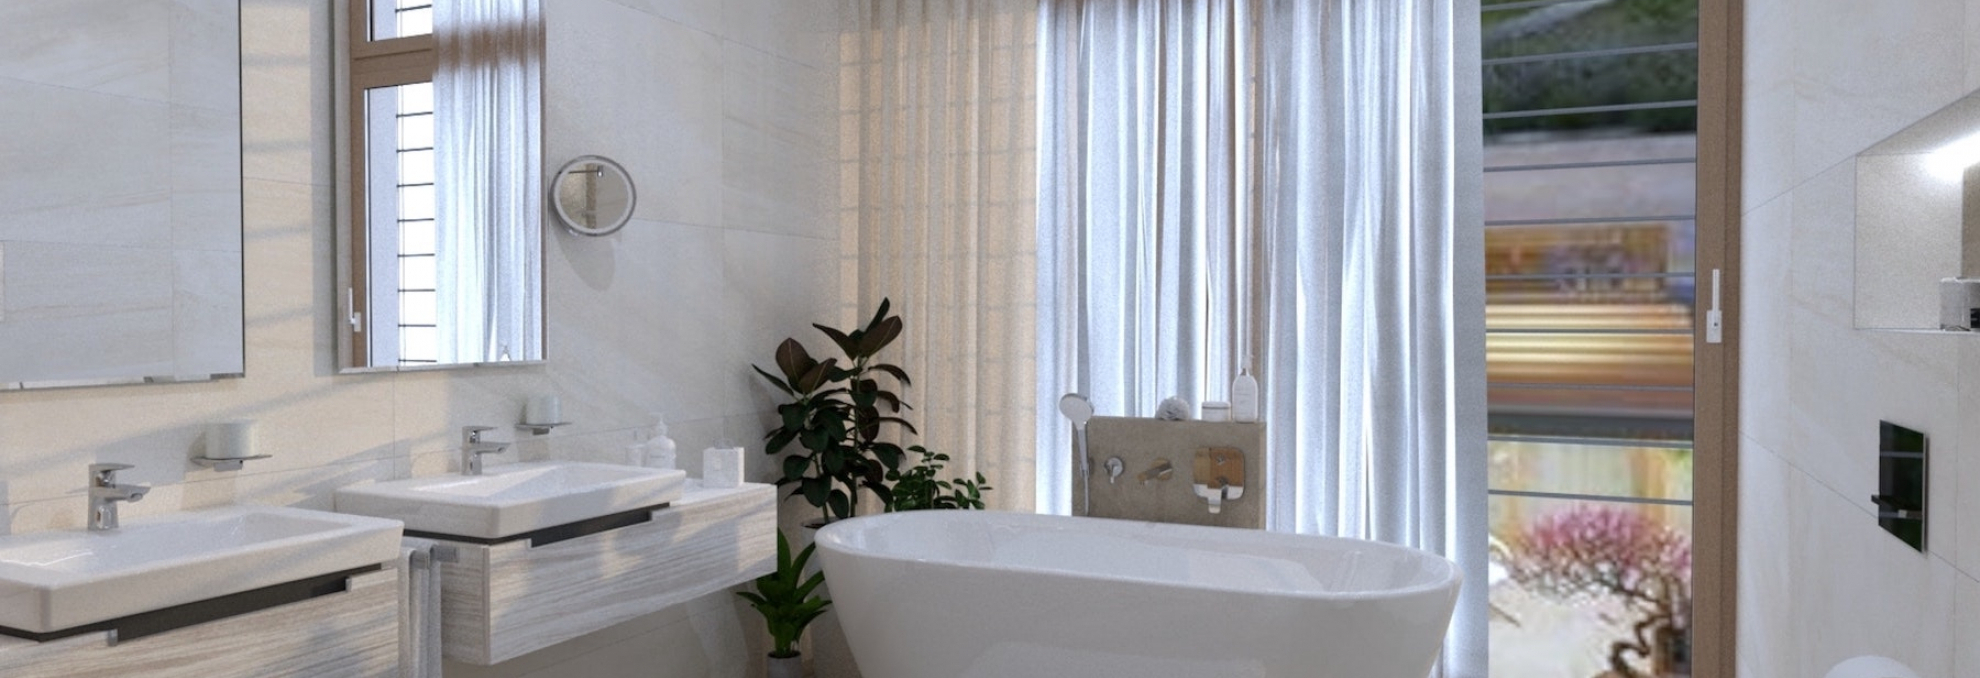 Vizualizace koupelny s obkladem a dlažbou Melt od La Futura